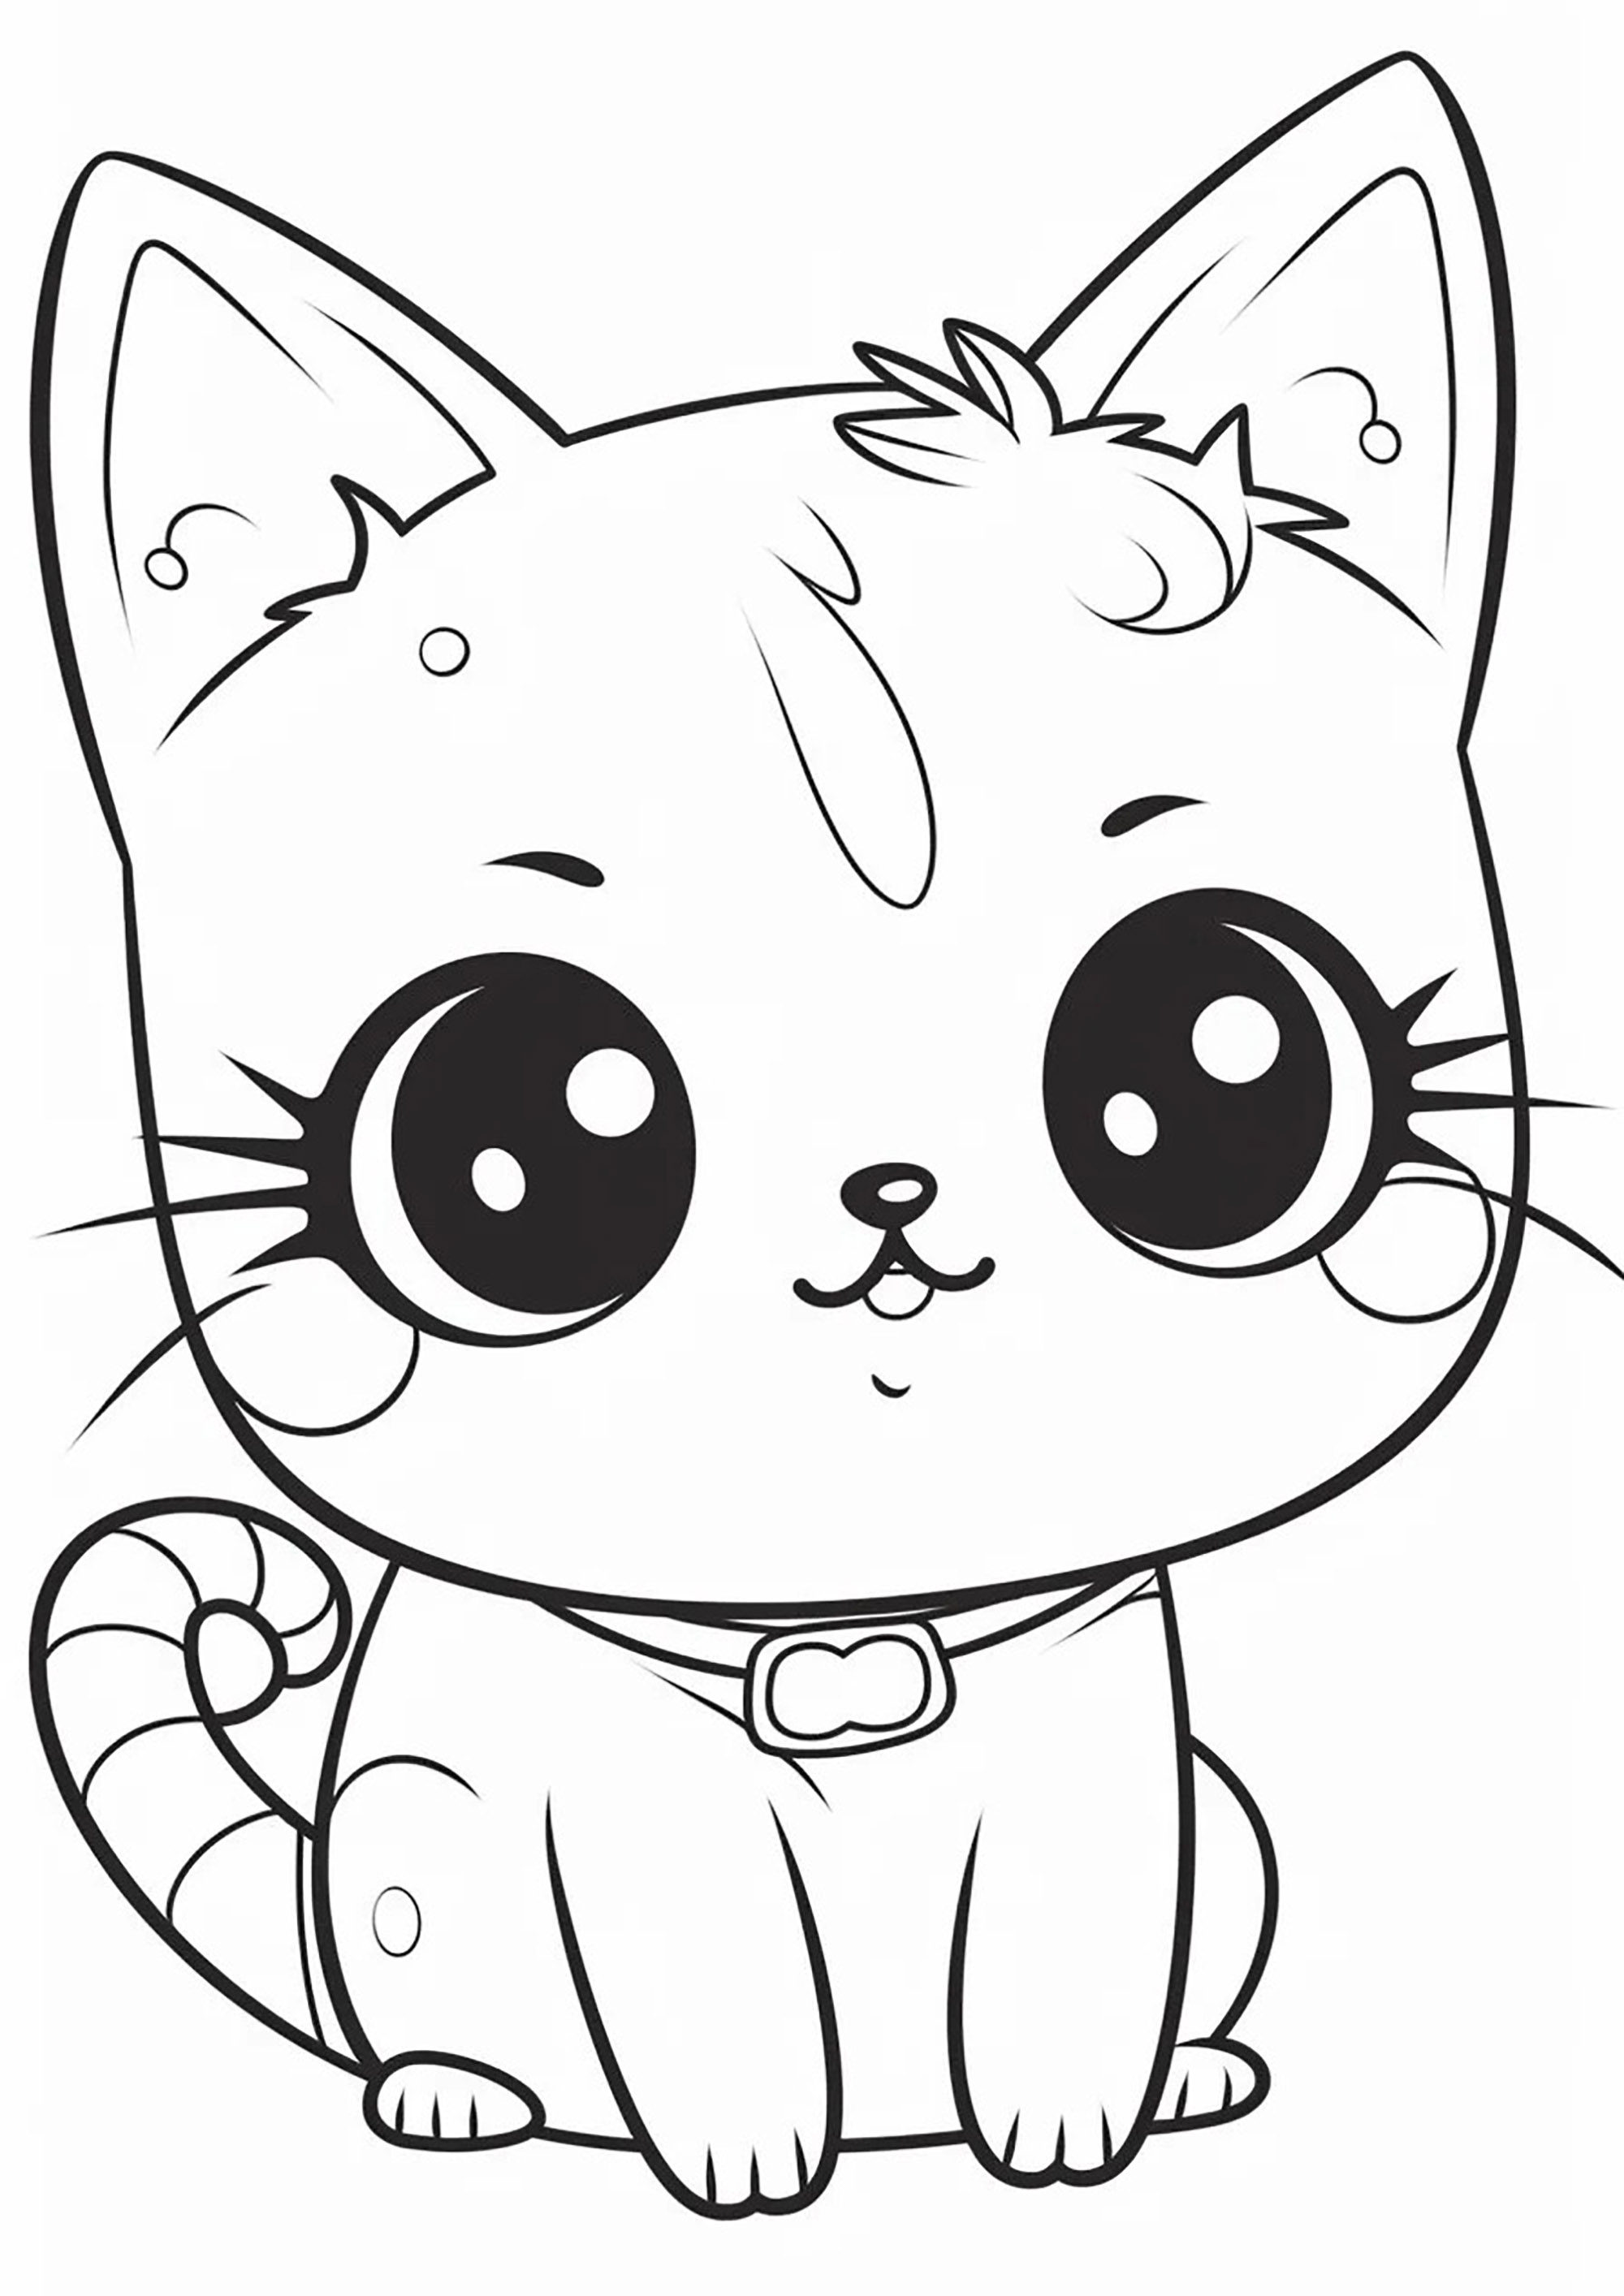 Petit chaton très mignon aux grands yeux. Un mélange entre les styles Manga et Kawaii